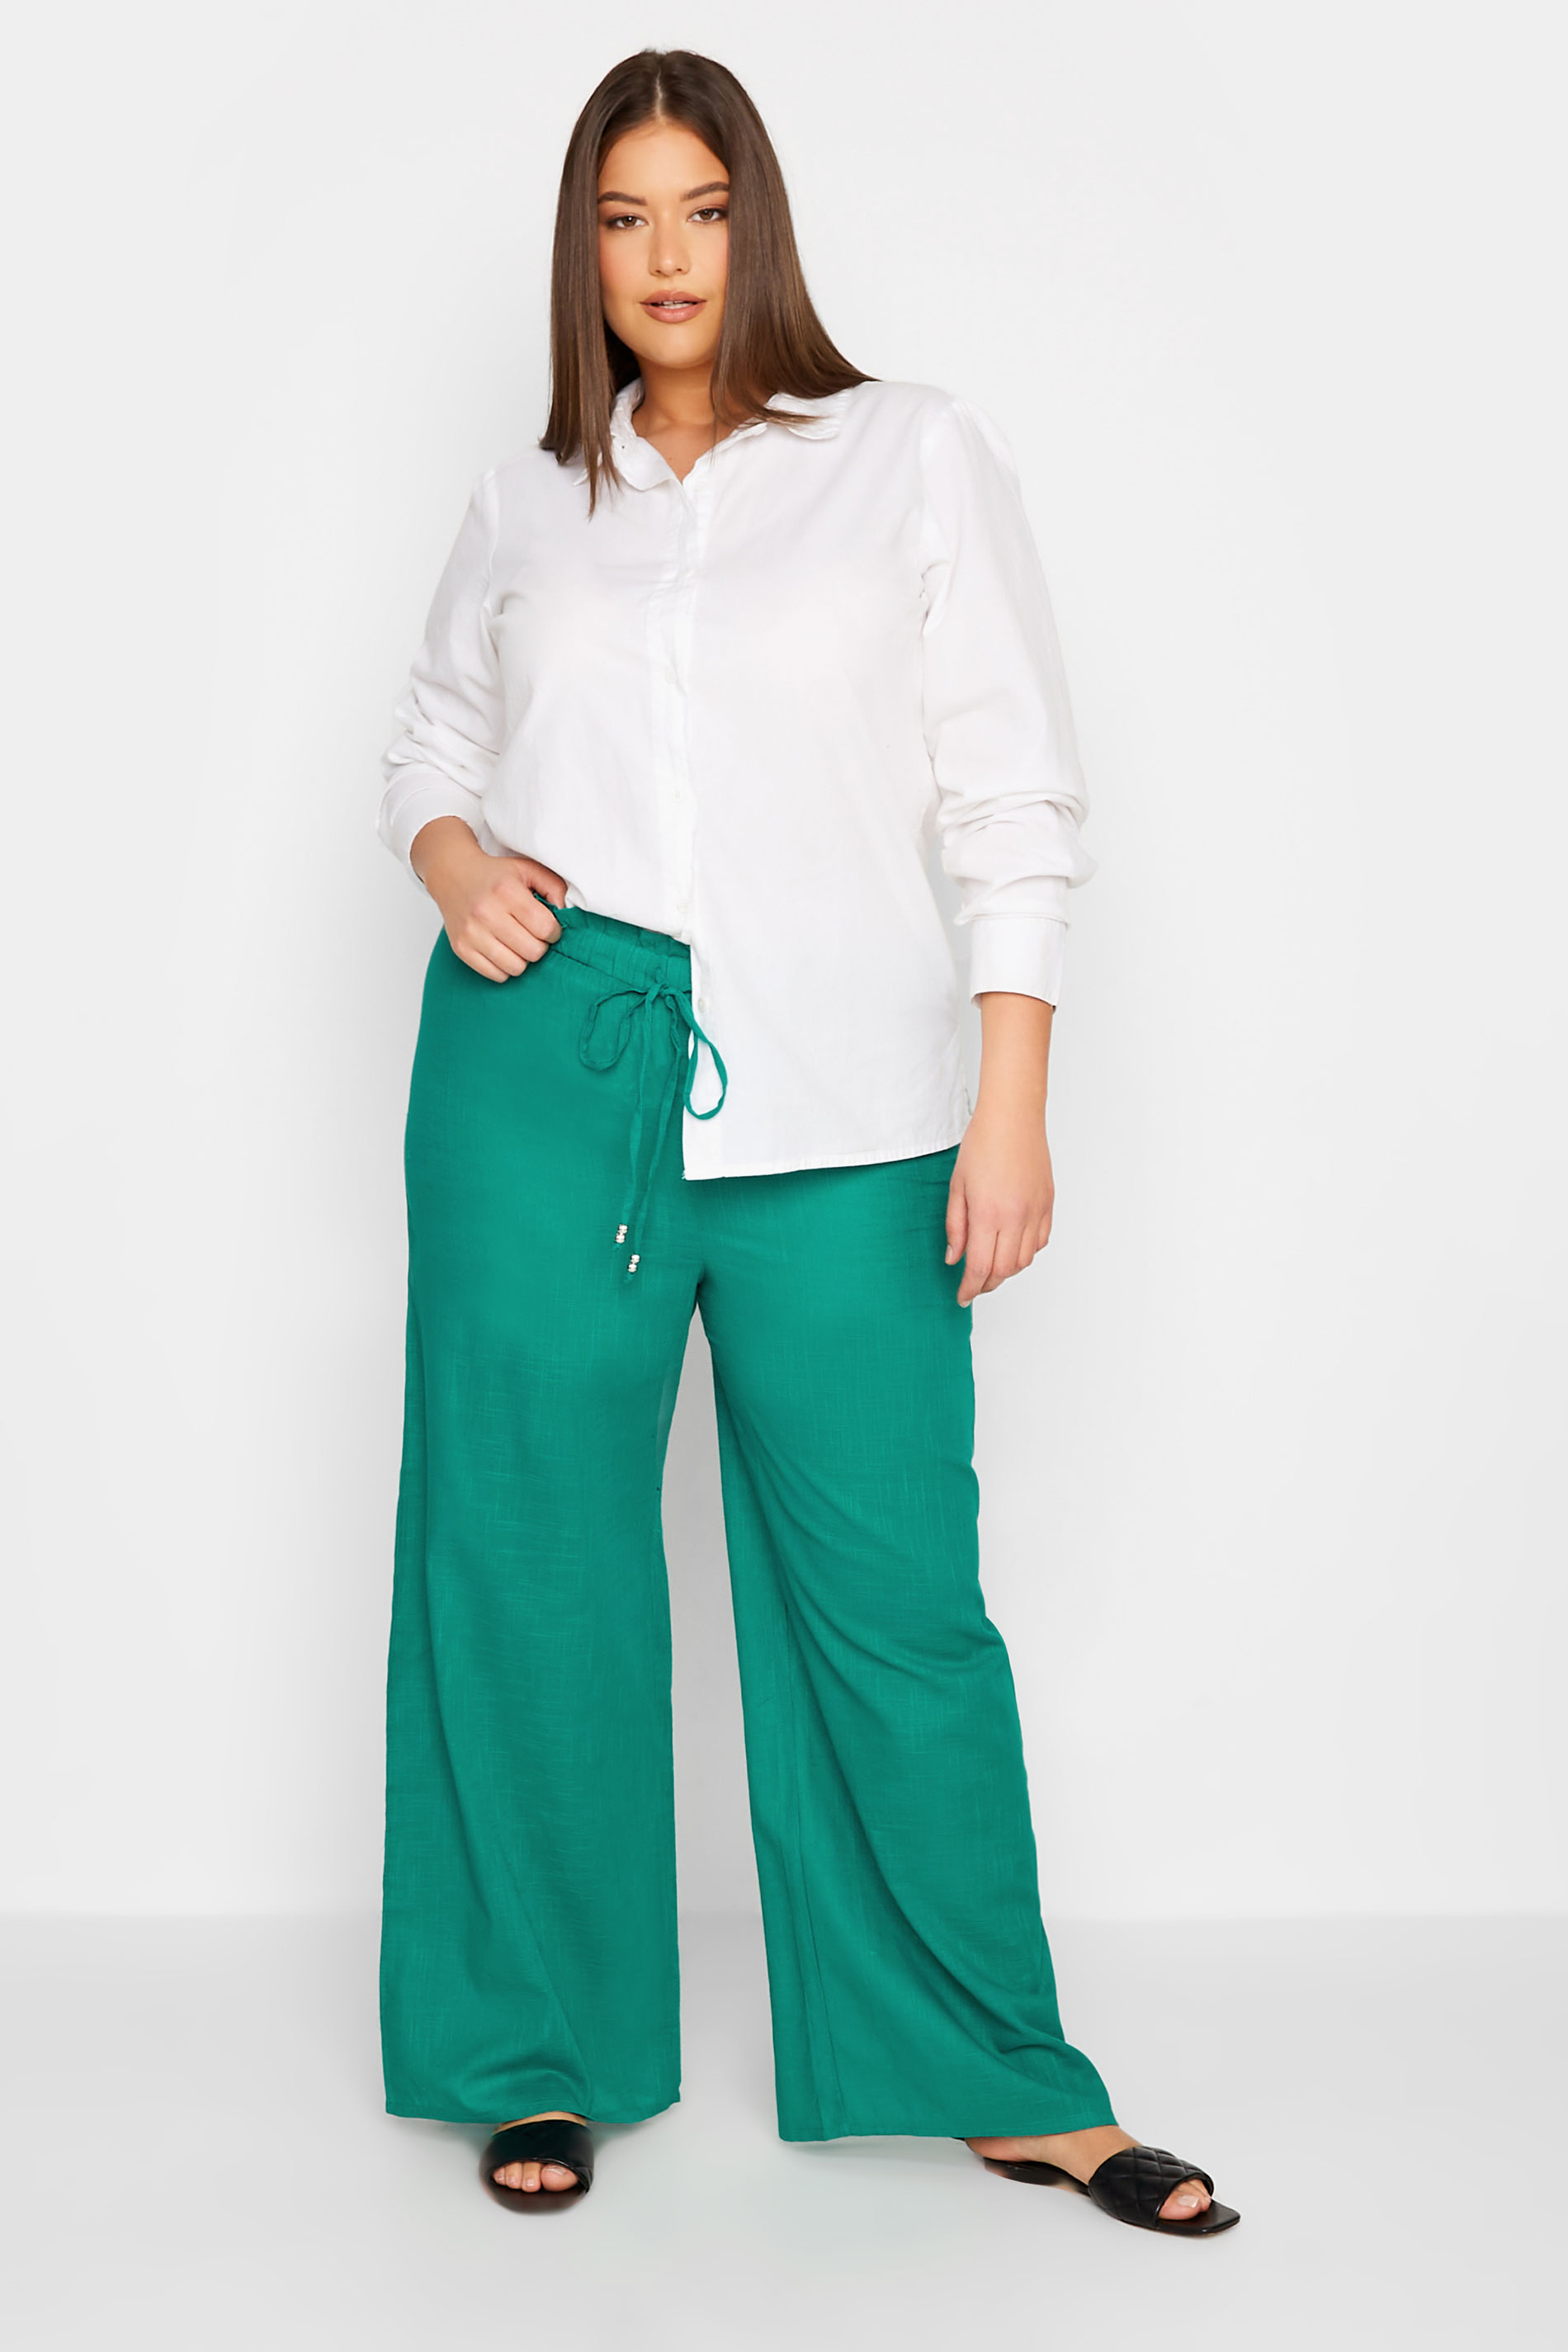 LTS Tall Women's Green Cotton Wide Leg Beach Trousers | Long Tall Sally 2